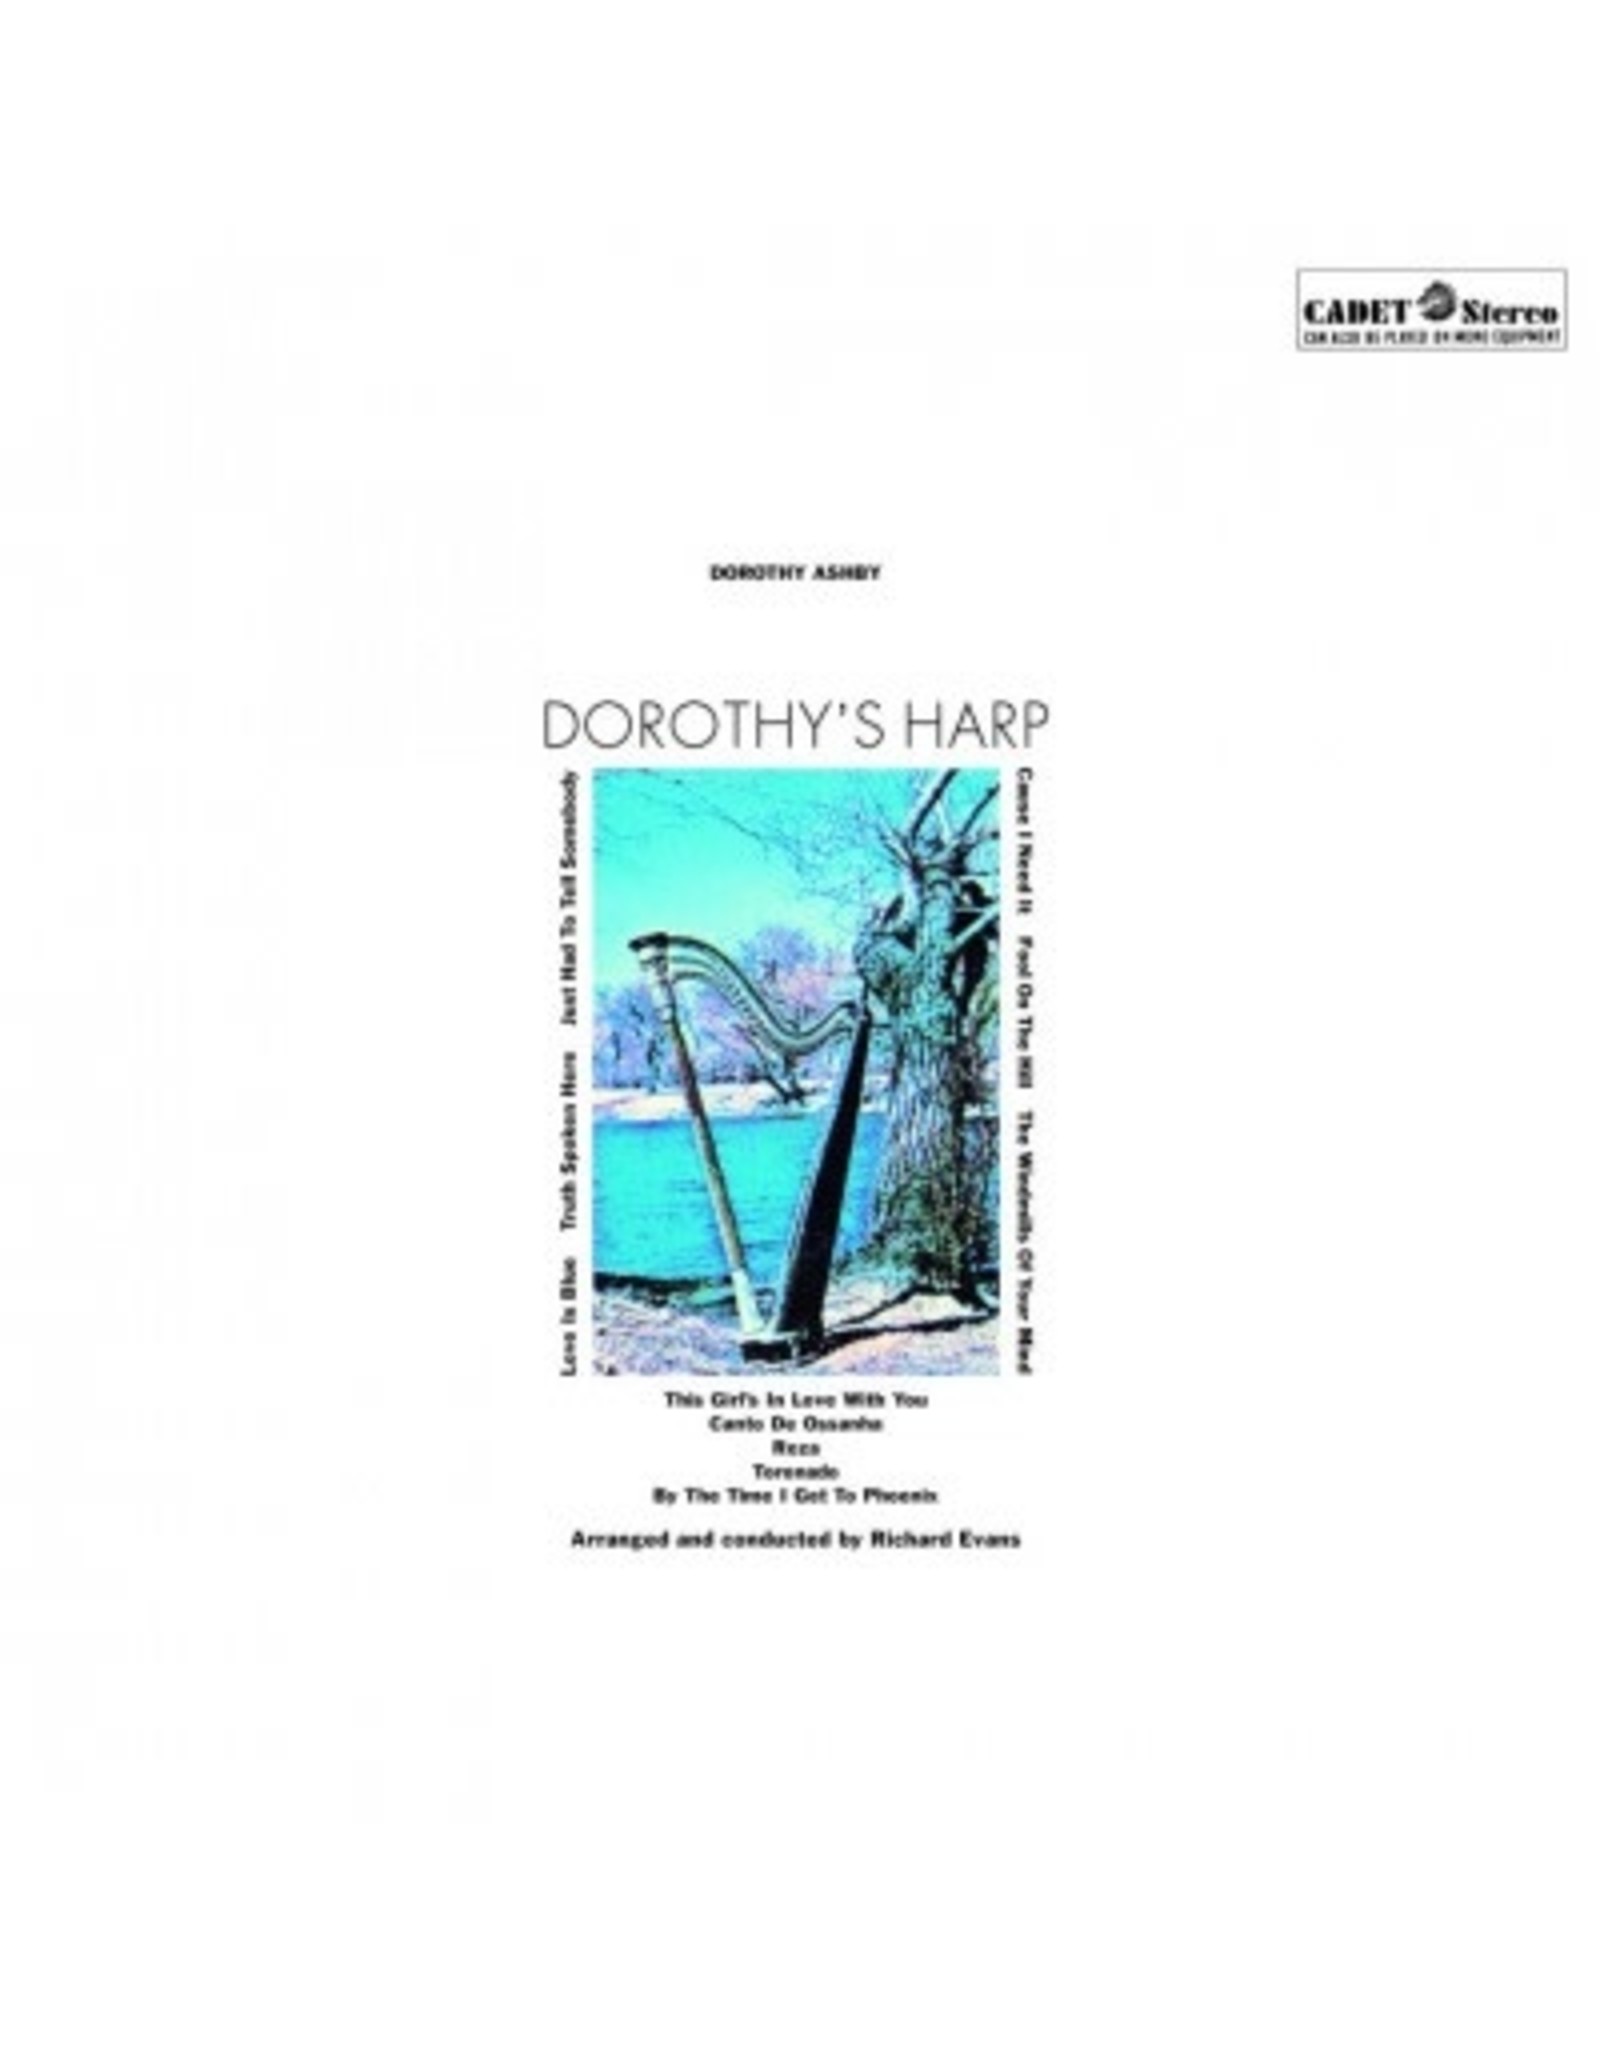 Music on Vinyl Ashby, Dorothy: Dorothy's Harp LP